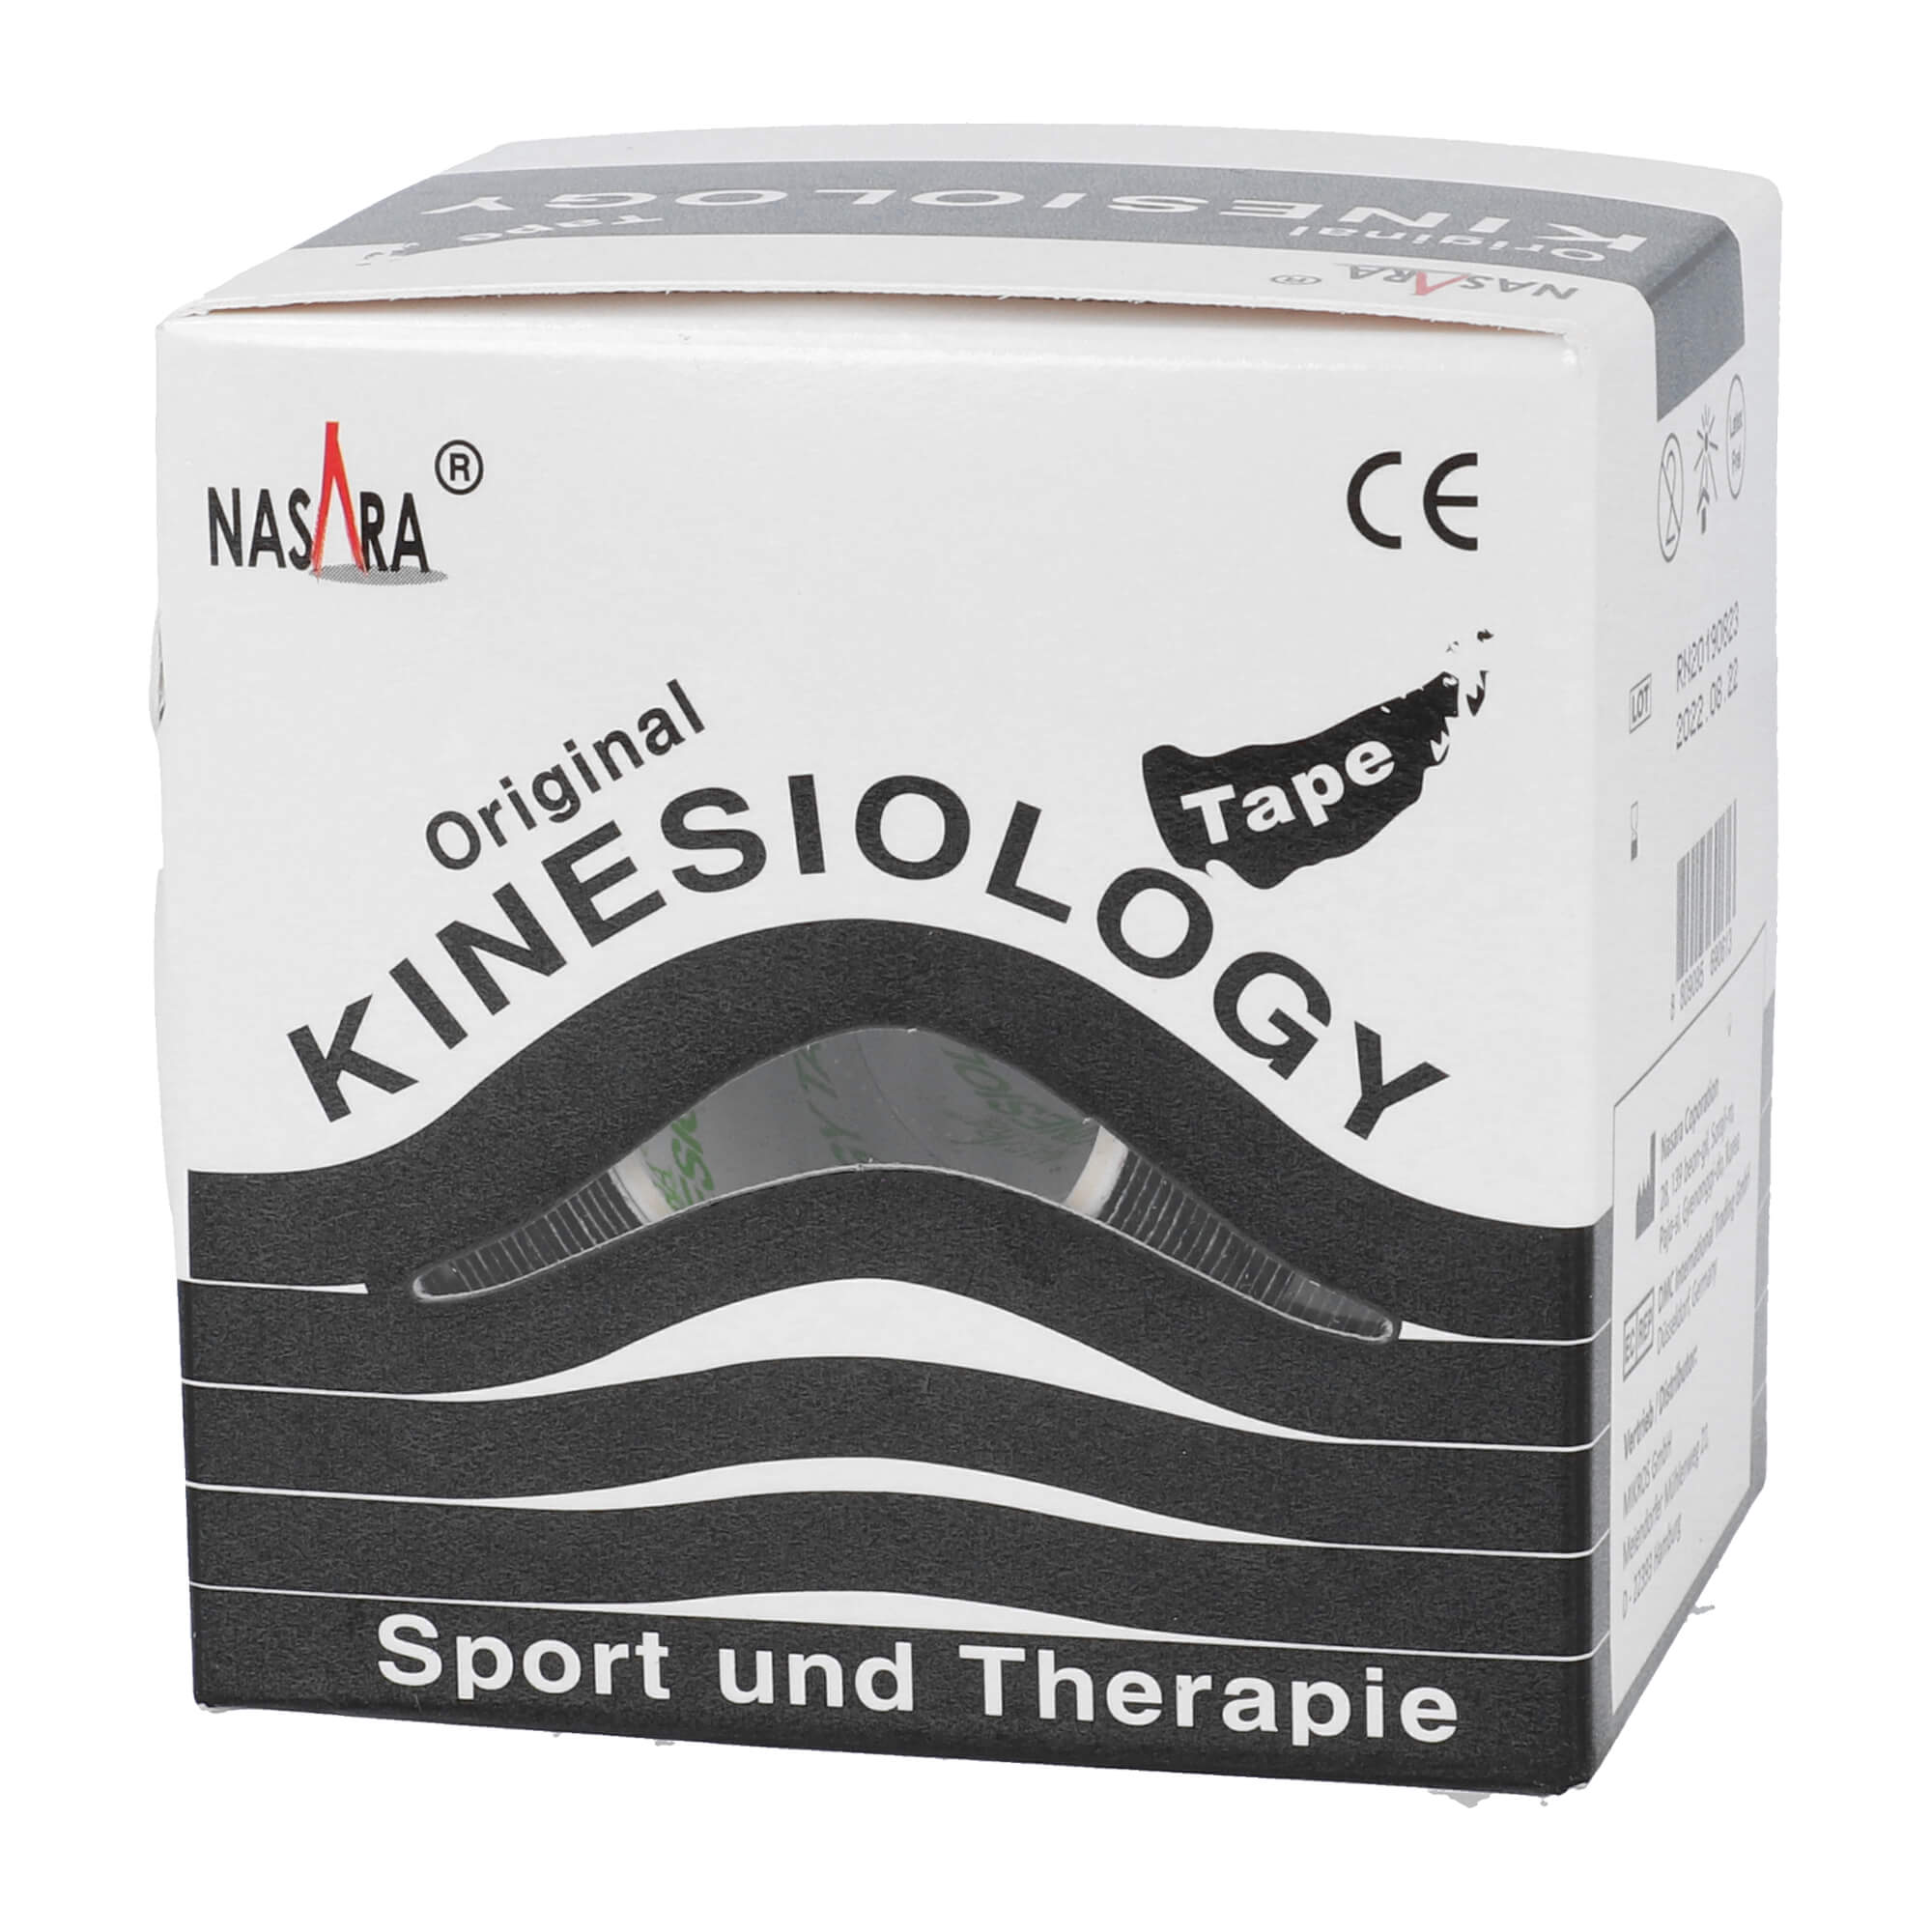 Kinesiology Tape für Sport und Therapie. Farbe: schwarz.